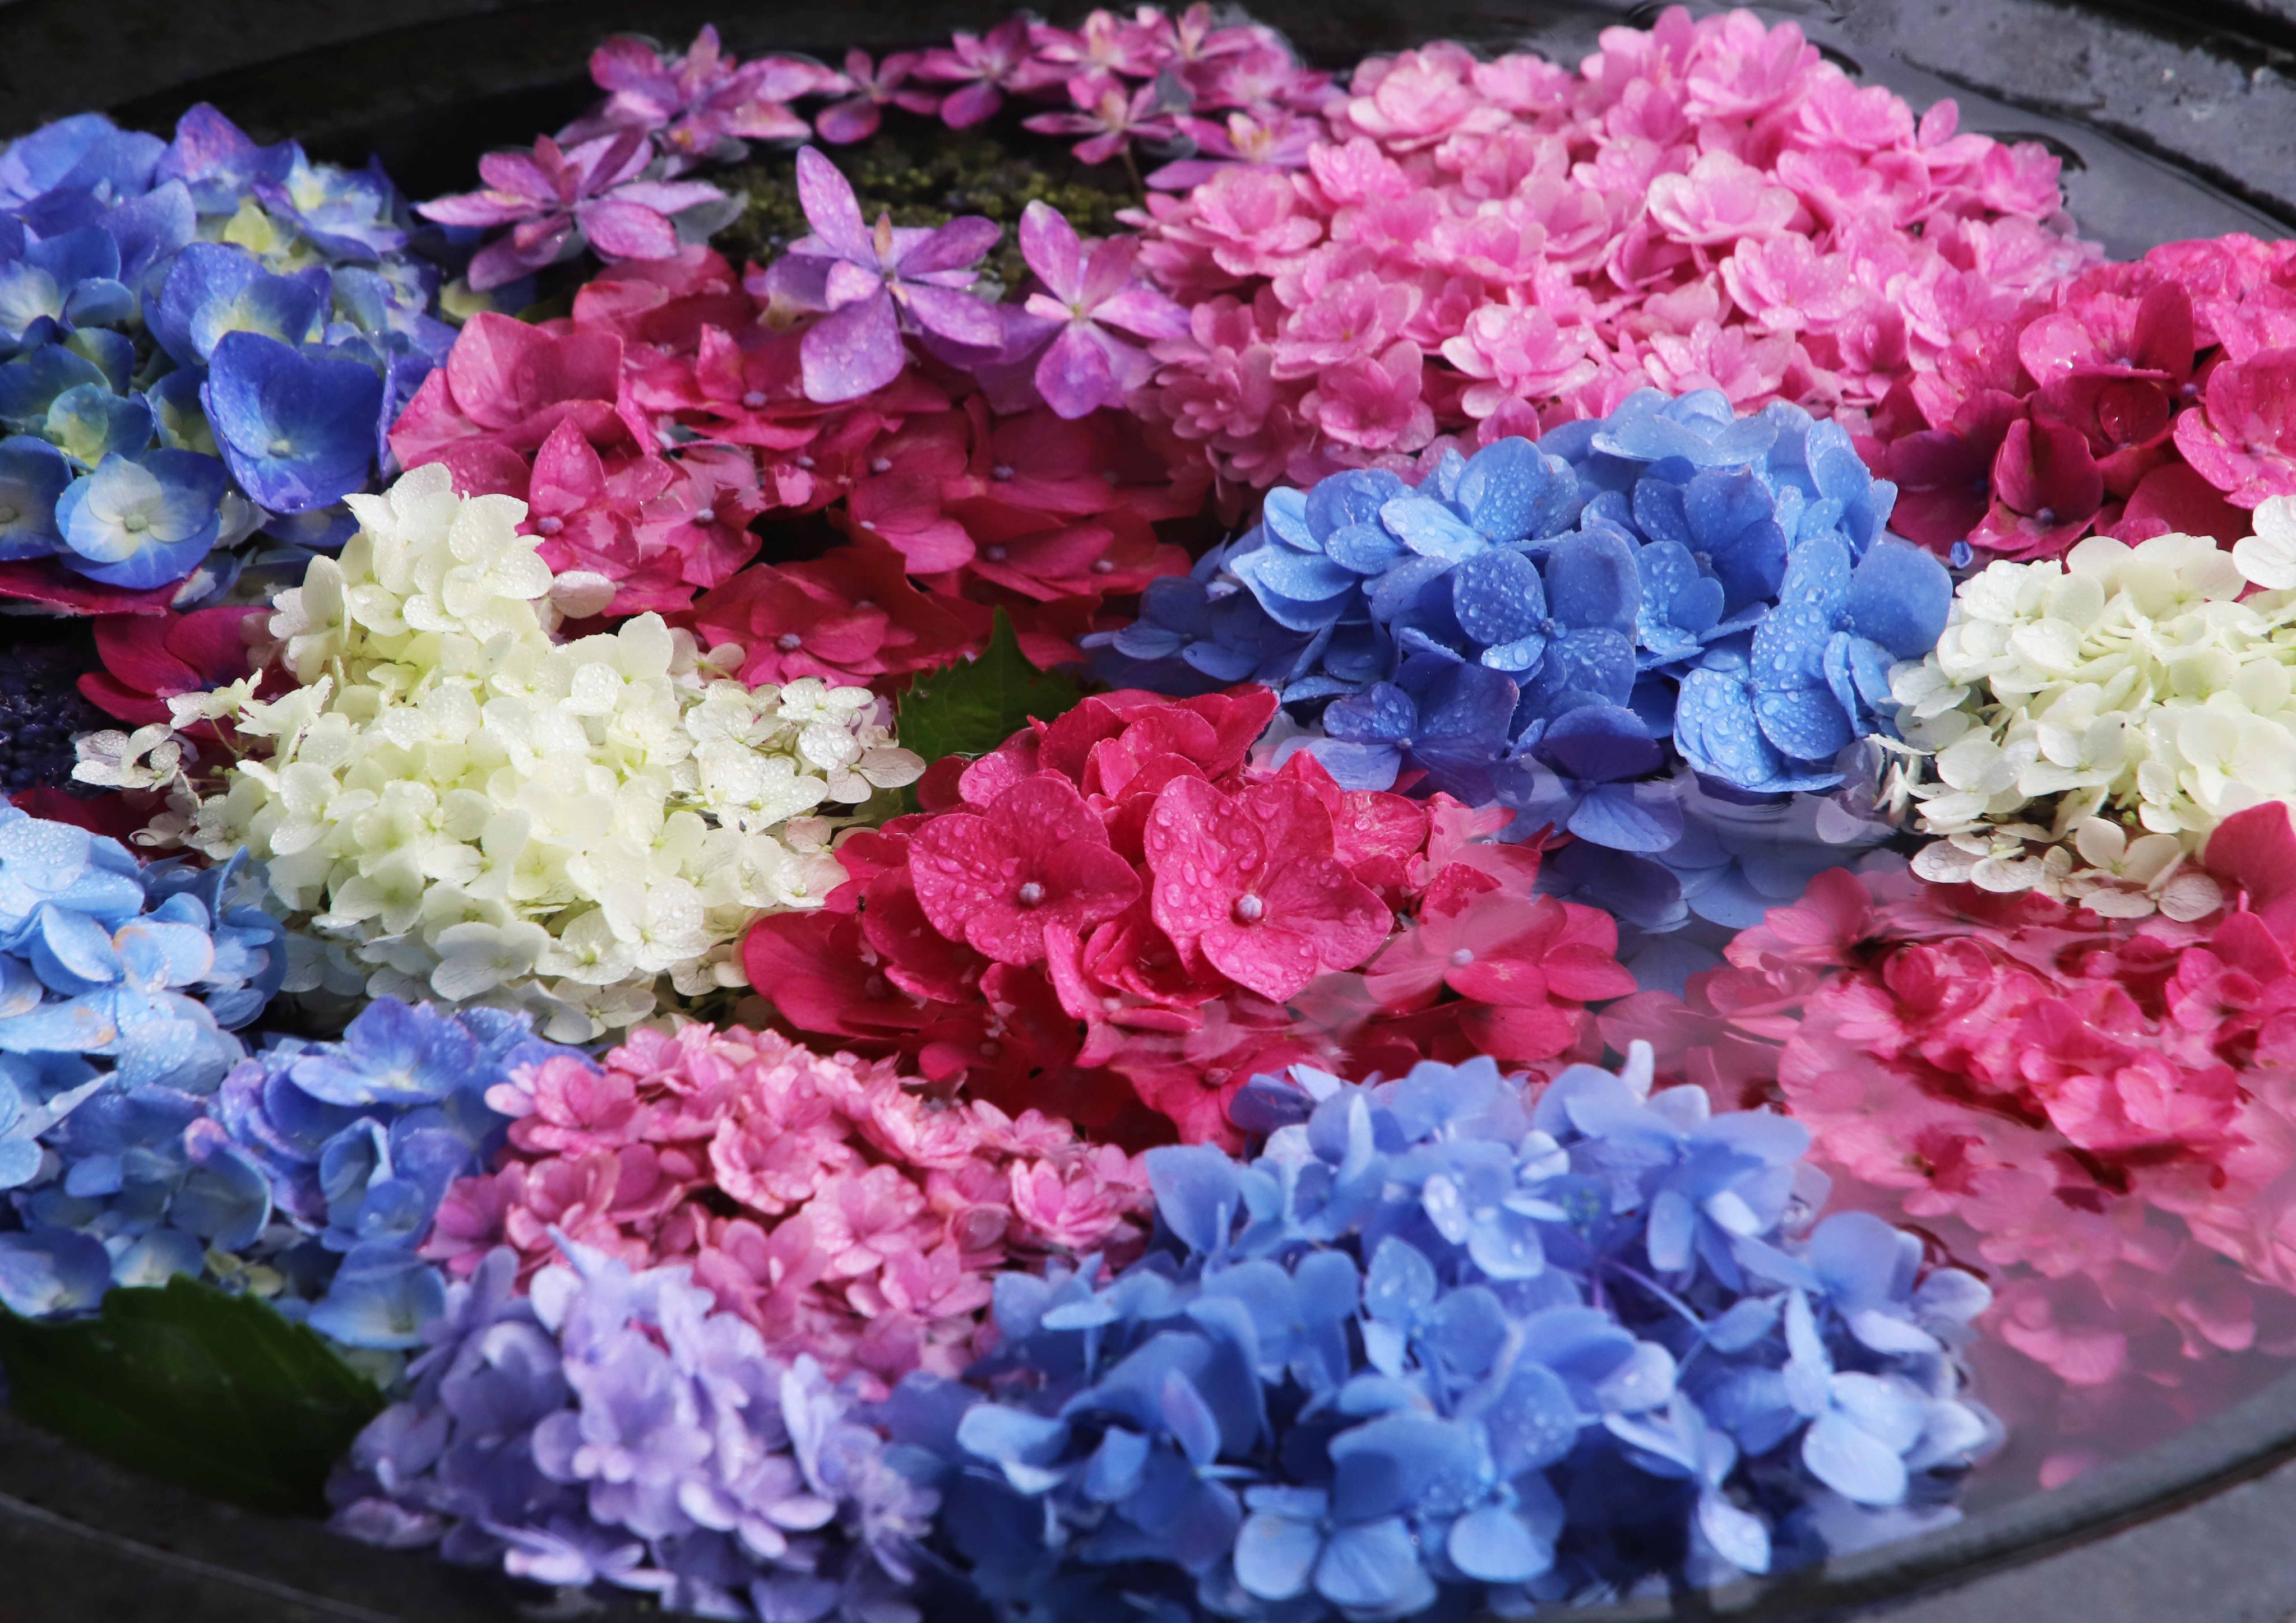 片柳弘史 紫陽花の花が咲きそろったので 今年も花手水を始めました しおれかけた紫陽花も 水をたっぷり吸って元気いっぱいです 県総合庁舎隣 カトリック宇部教会にて公開中 T Co E9phcjscji Twitter